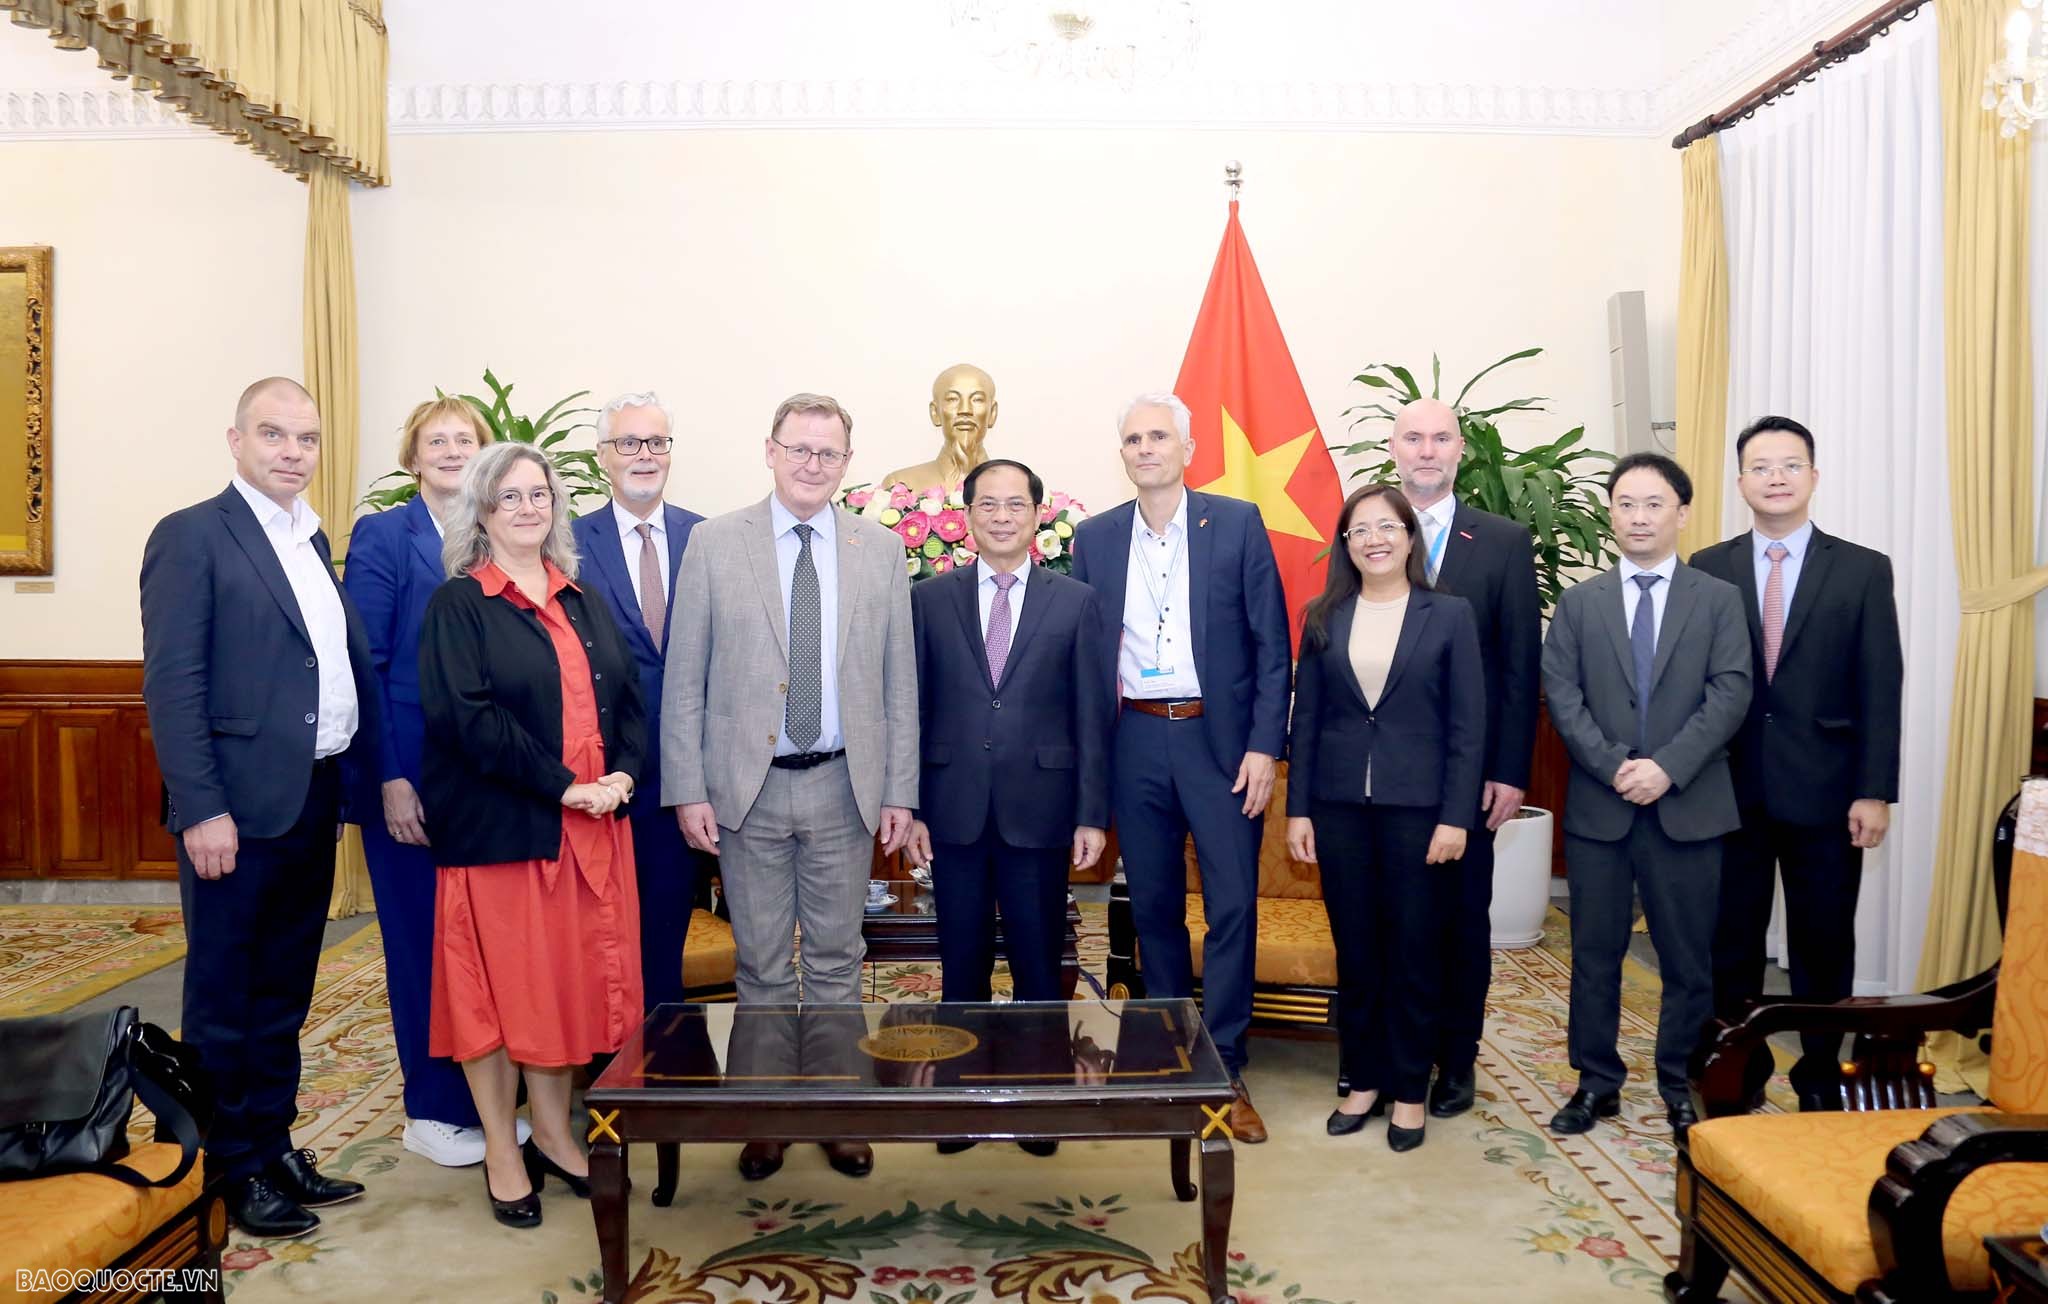 Bộ trưởng Ngoại giao Bùi Thanh Sơn tiếp Thủ hiến bang Thuringia, cùng đoàn doanh nghiệp Đức đang có chuyến thăm và làm việc tại Việt Nam